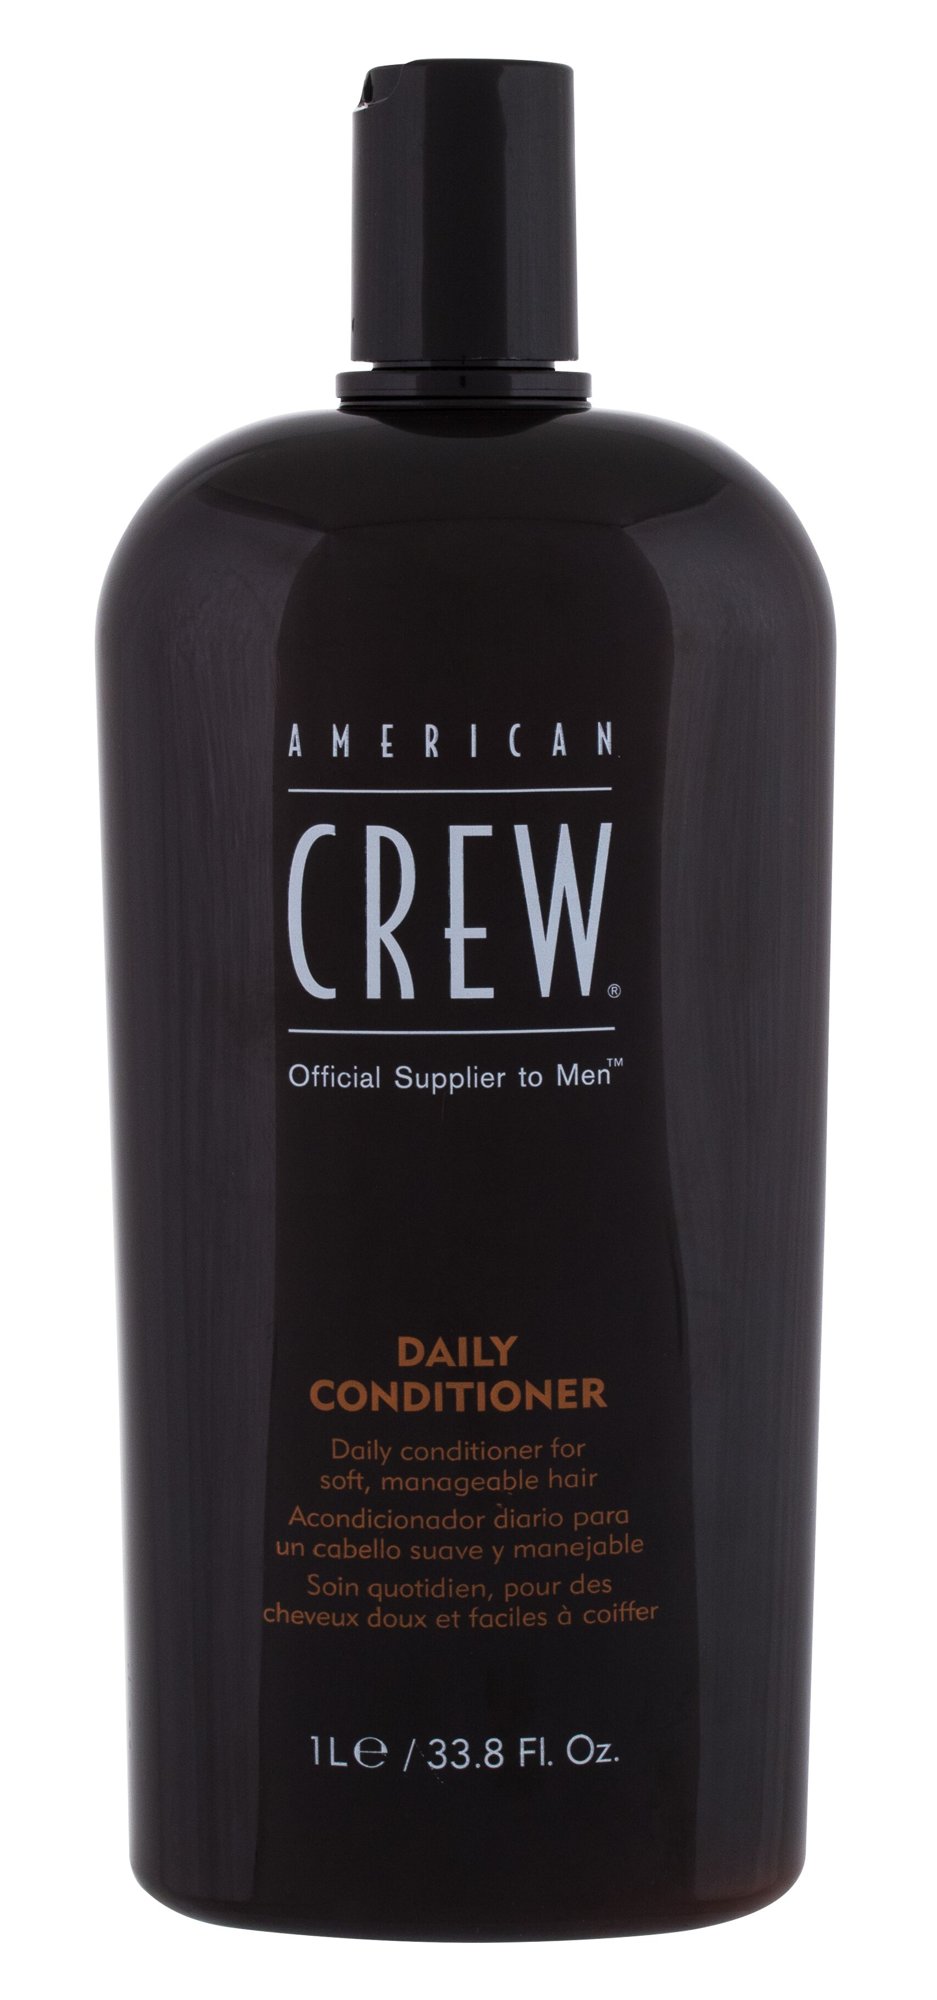 American Crew Classic kondicionierius